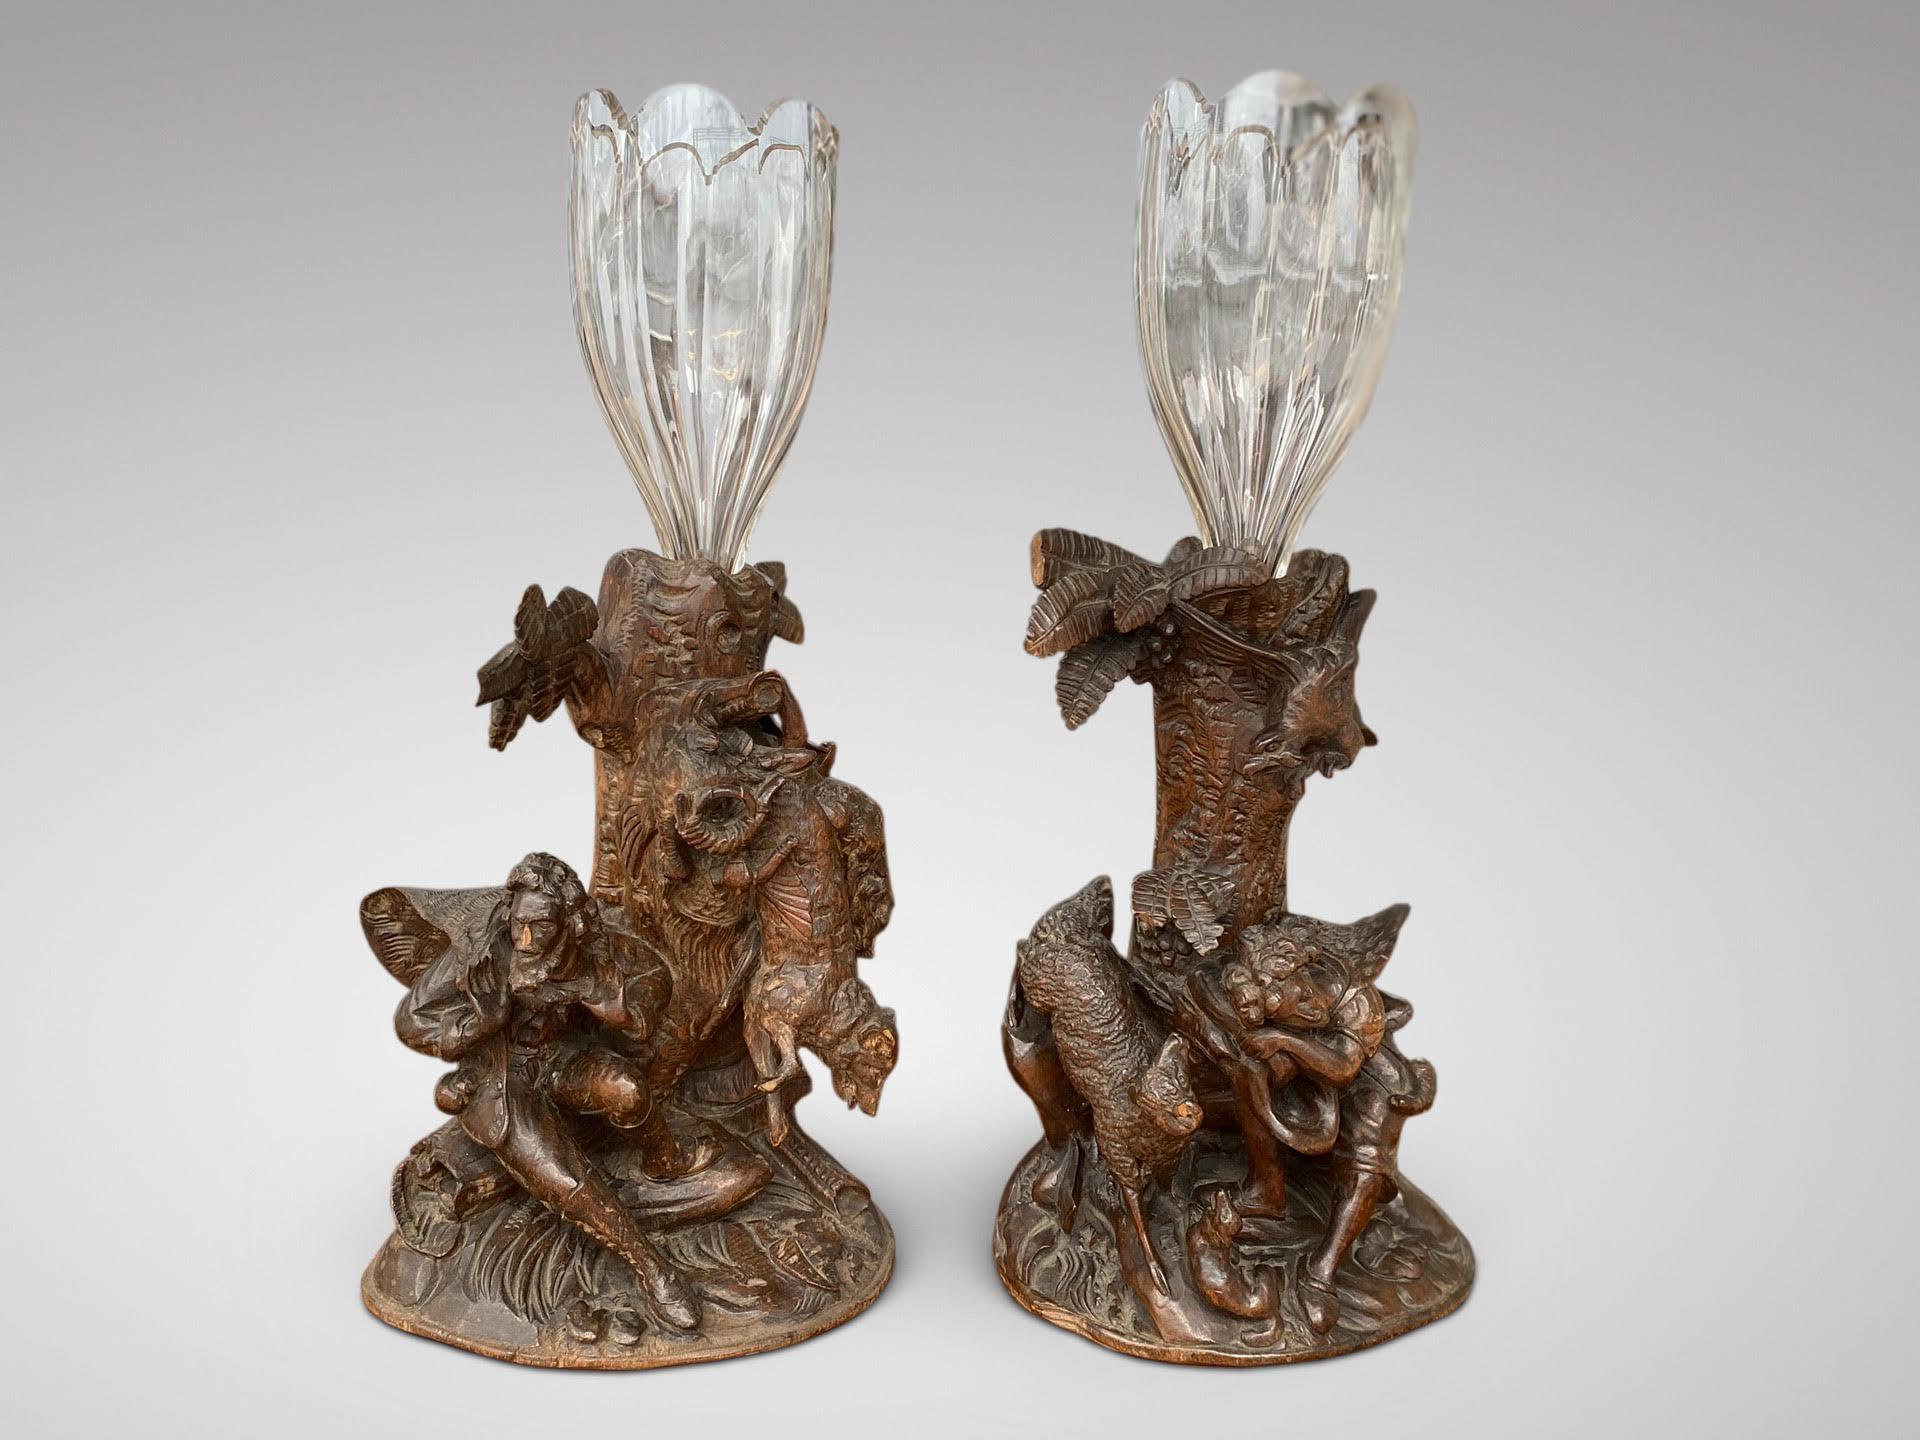 Une belle paire de vases à fleurs en bois sculpté du 19ème siècle, avec une scène de chasse en forêt noire et des formes en verre. En parfait état d'origine. 

Les dimensions sont les suivantes :
Hauteur : 42,5cm (16,7in)
Largeur : 20cm